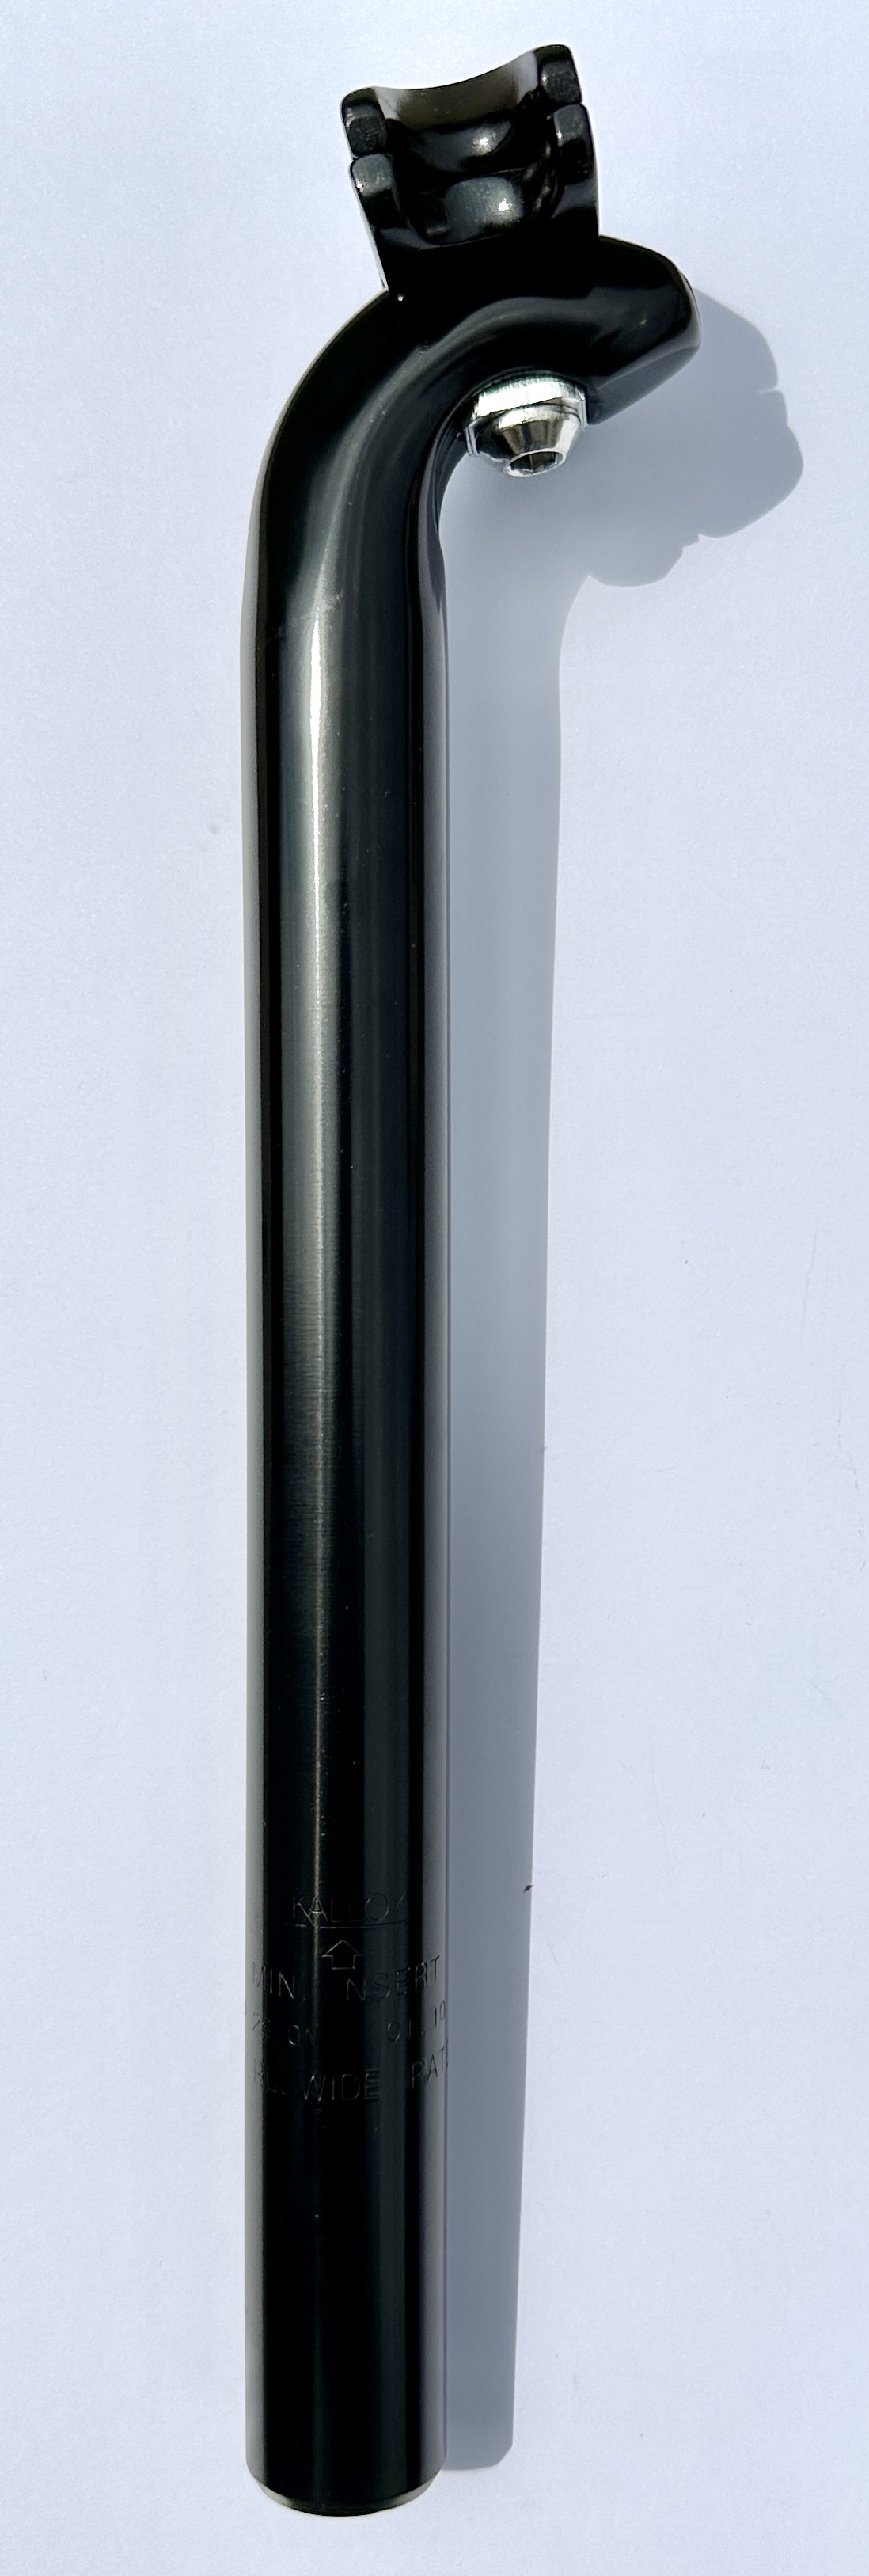 Fuxon SP 248  Tija de sillín con patente  28mm  300 mm Alu